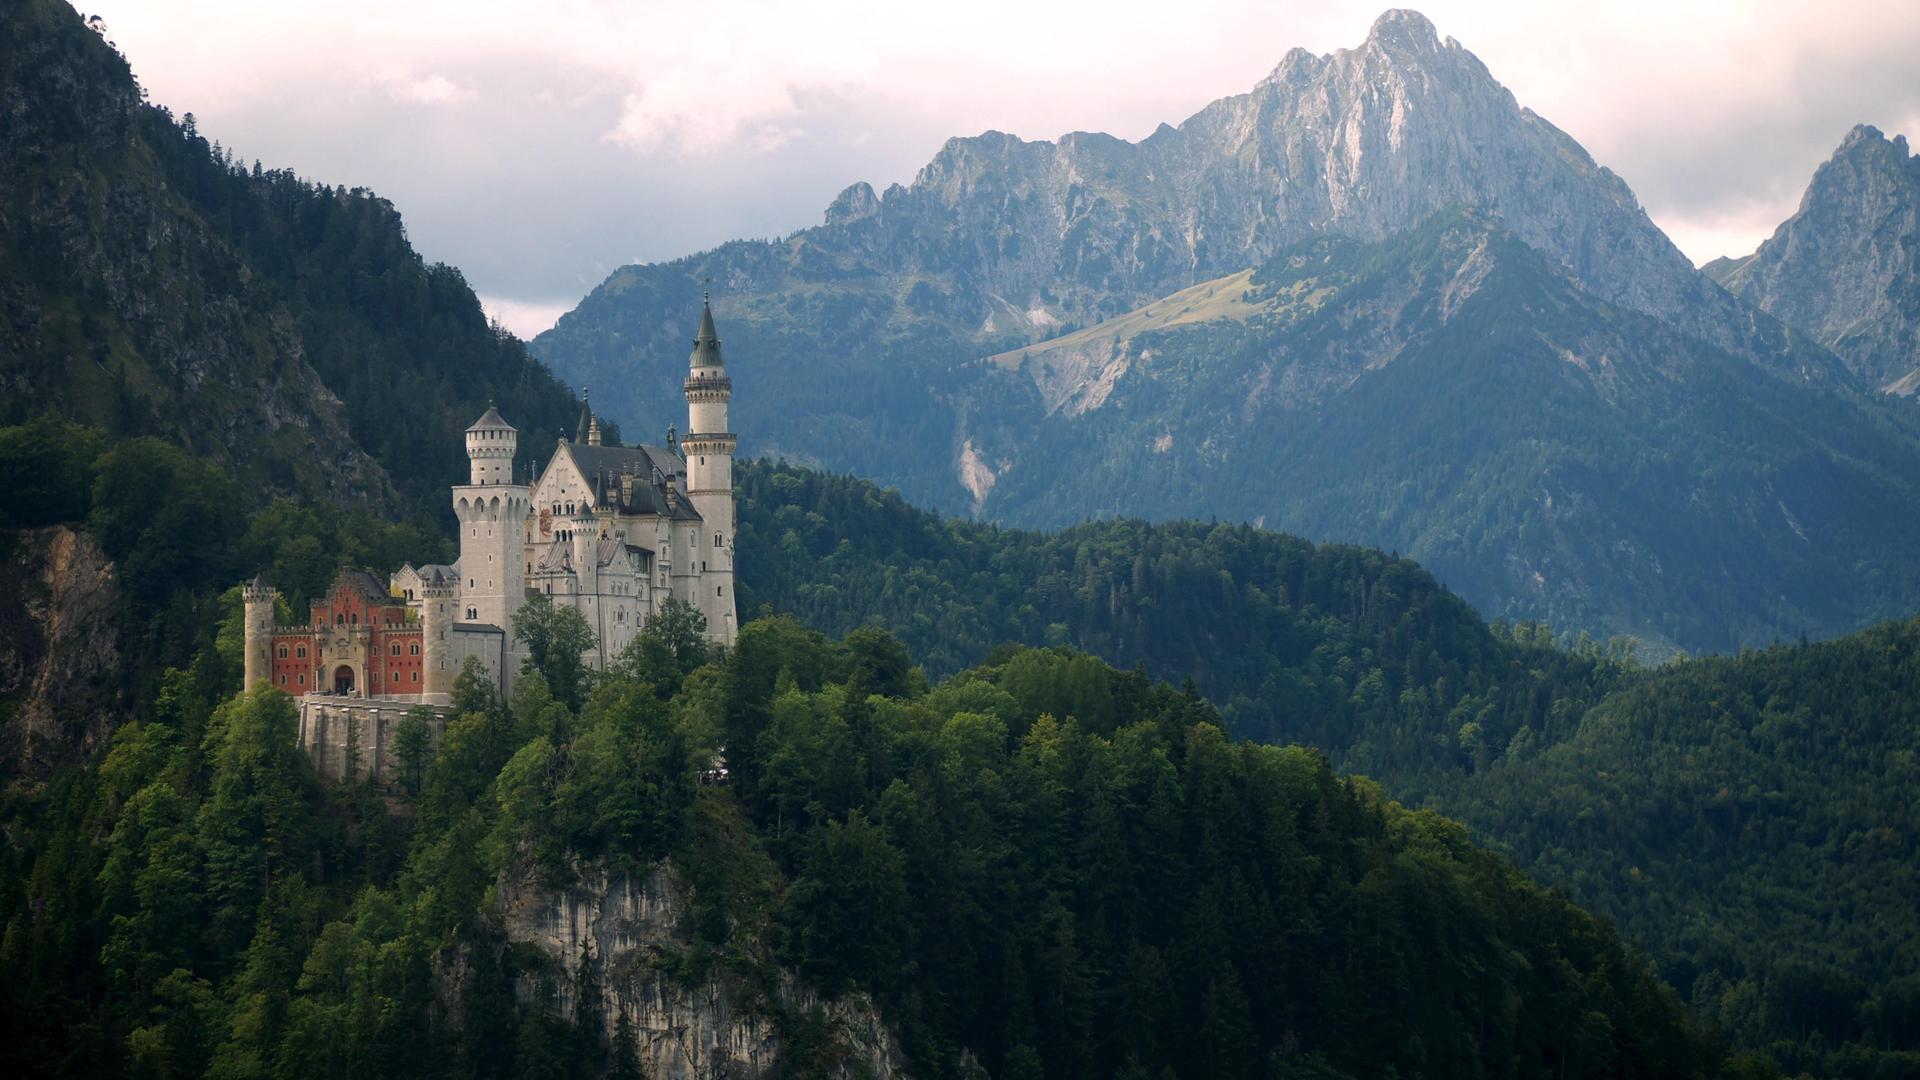 fond d'écran du château de neuschwanstein,montagne,station de montagne,chaîne de montagnes,alpes,paysage naturel